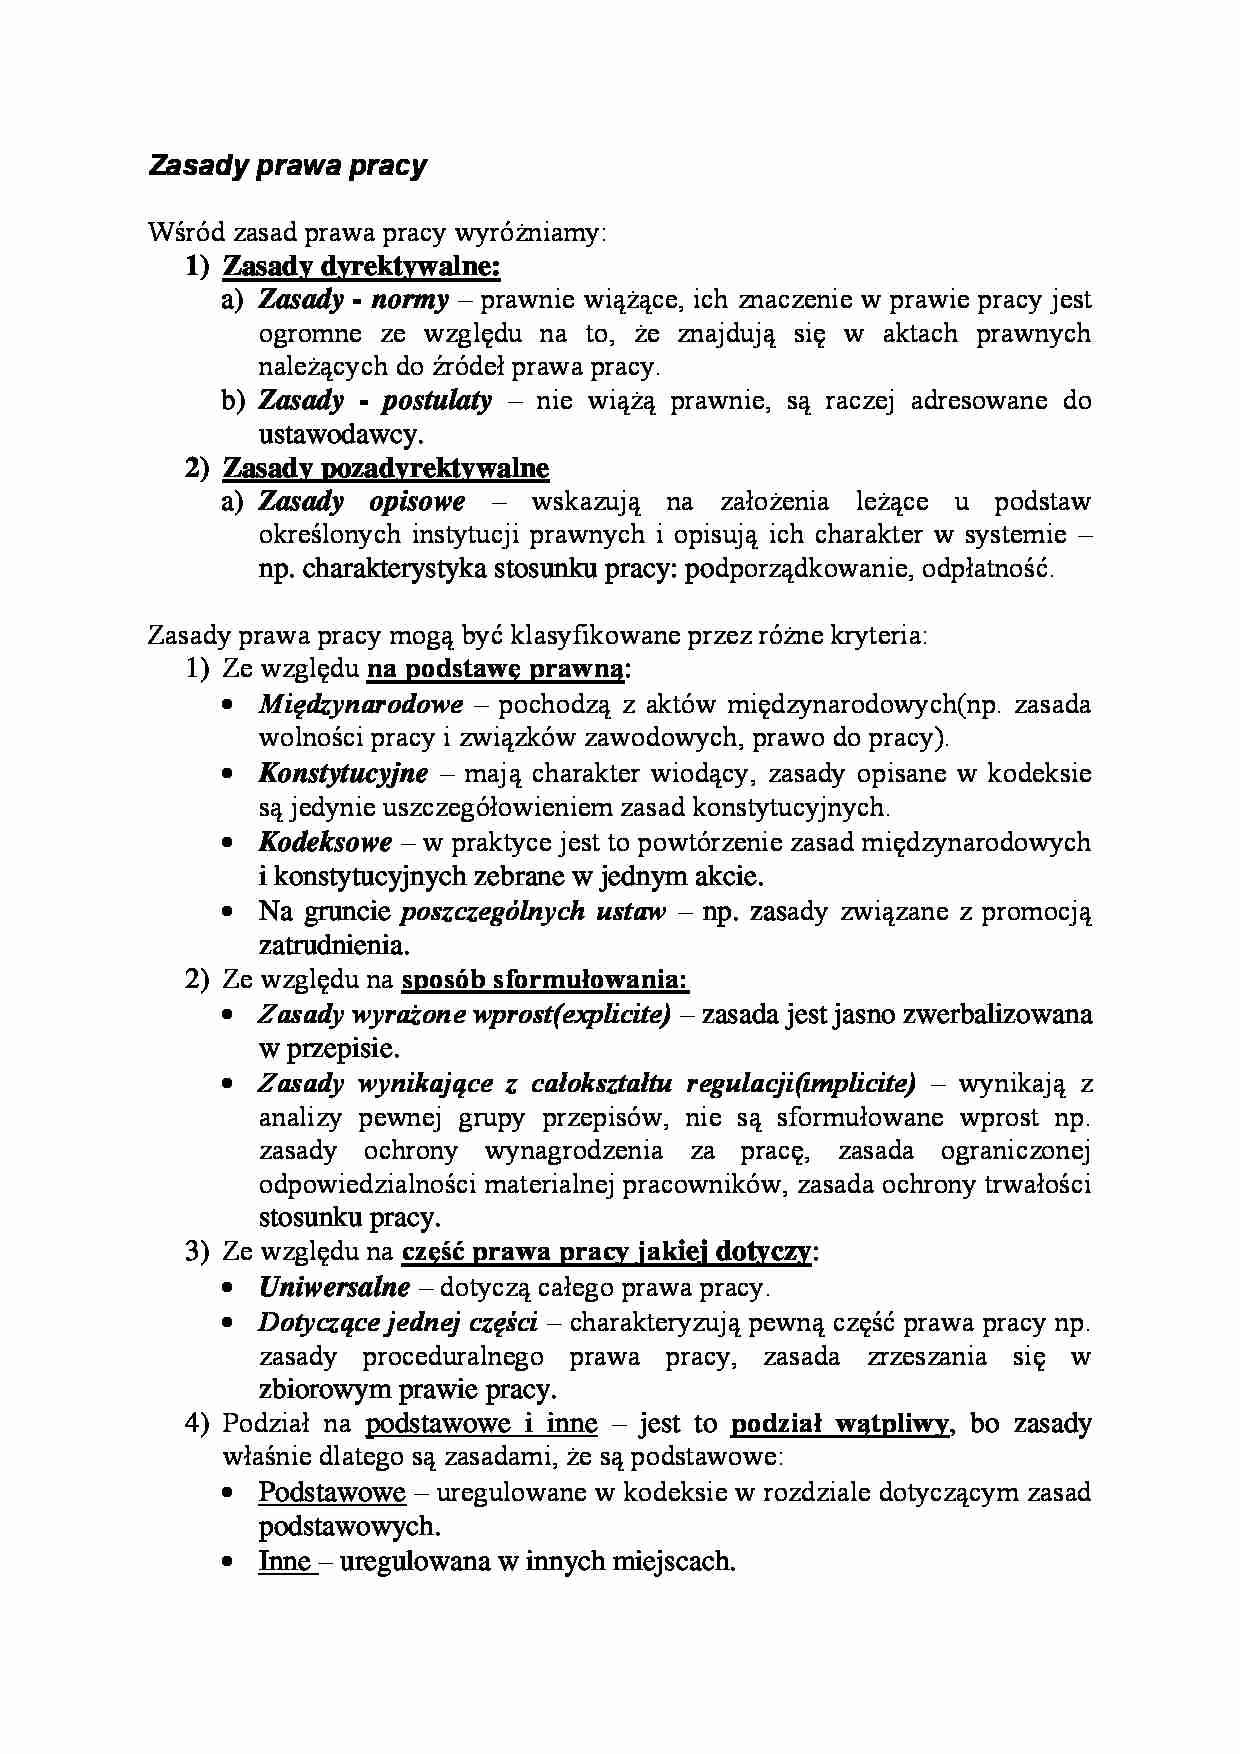 Zasady prawa pracy - strona 1